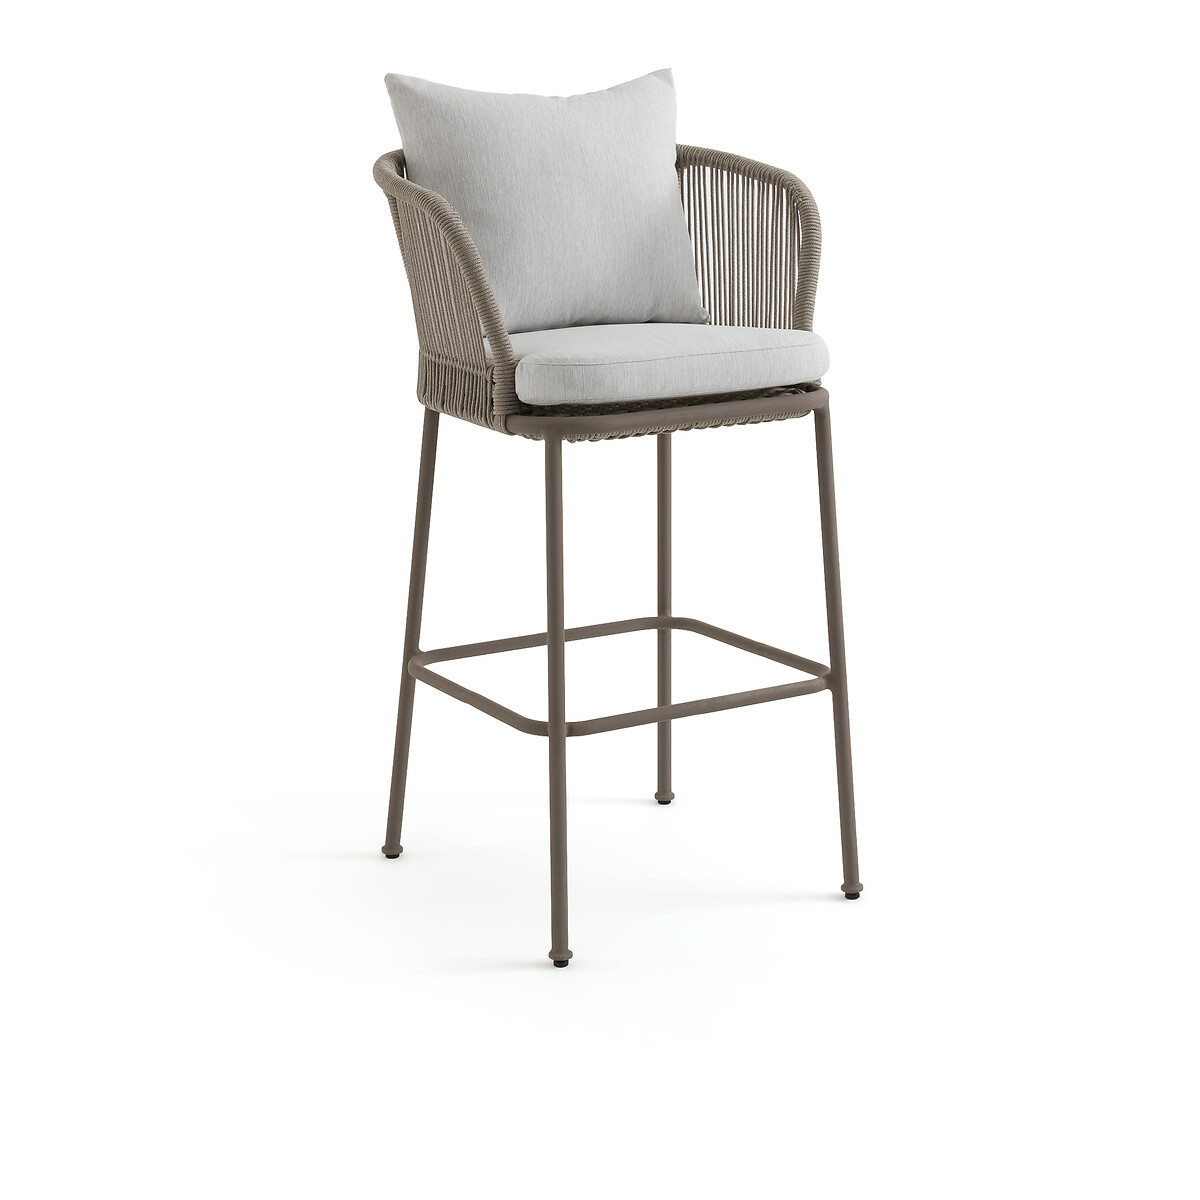 Кресло столовое для сада высокое Cabestan единый размер каштановый кресло столовое для сада cabestan э галлина единый размер каштановый